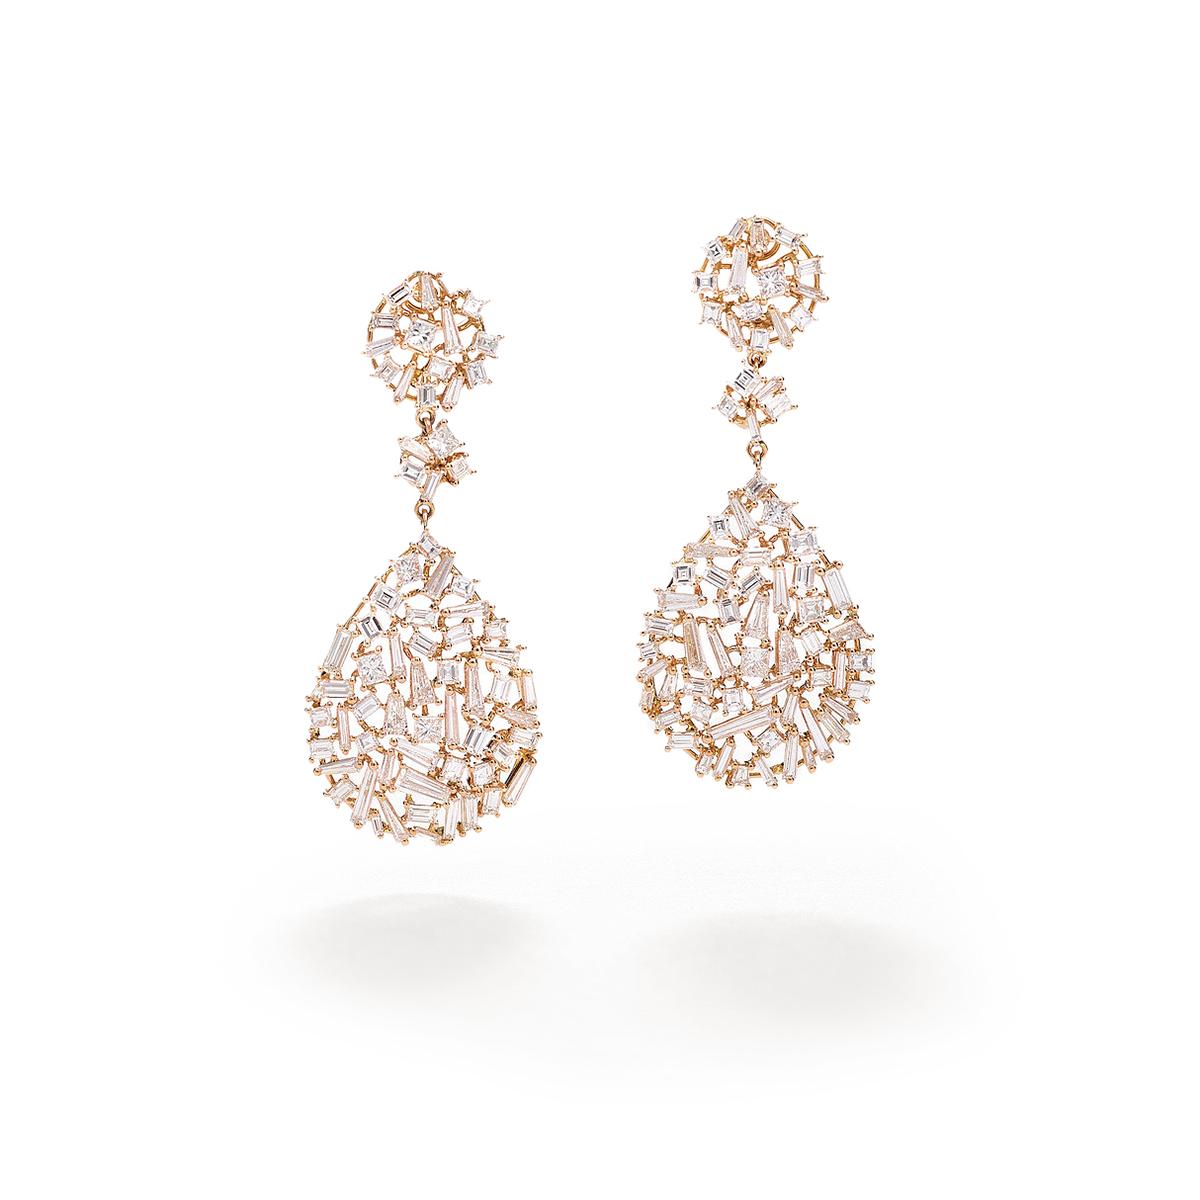 Boucles d'oreilles en or rose 18 carats serties de 139 diamants taille baguette, princesse et conique 7,61 cts   